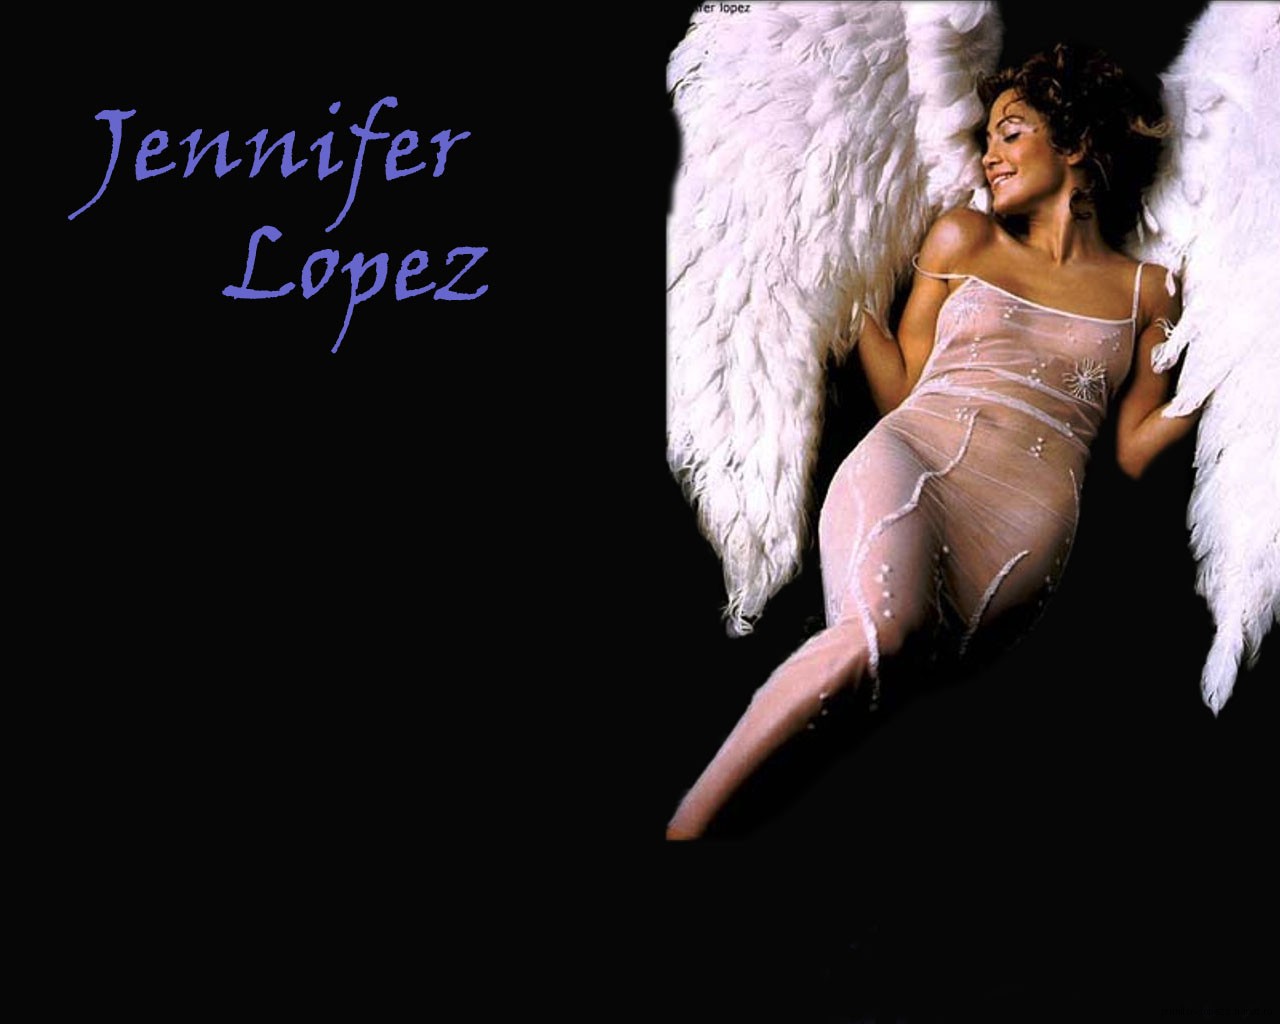  Дженнифер Лопес обои рабочего стола ( Jennifer Lopez wallpaper ) 